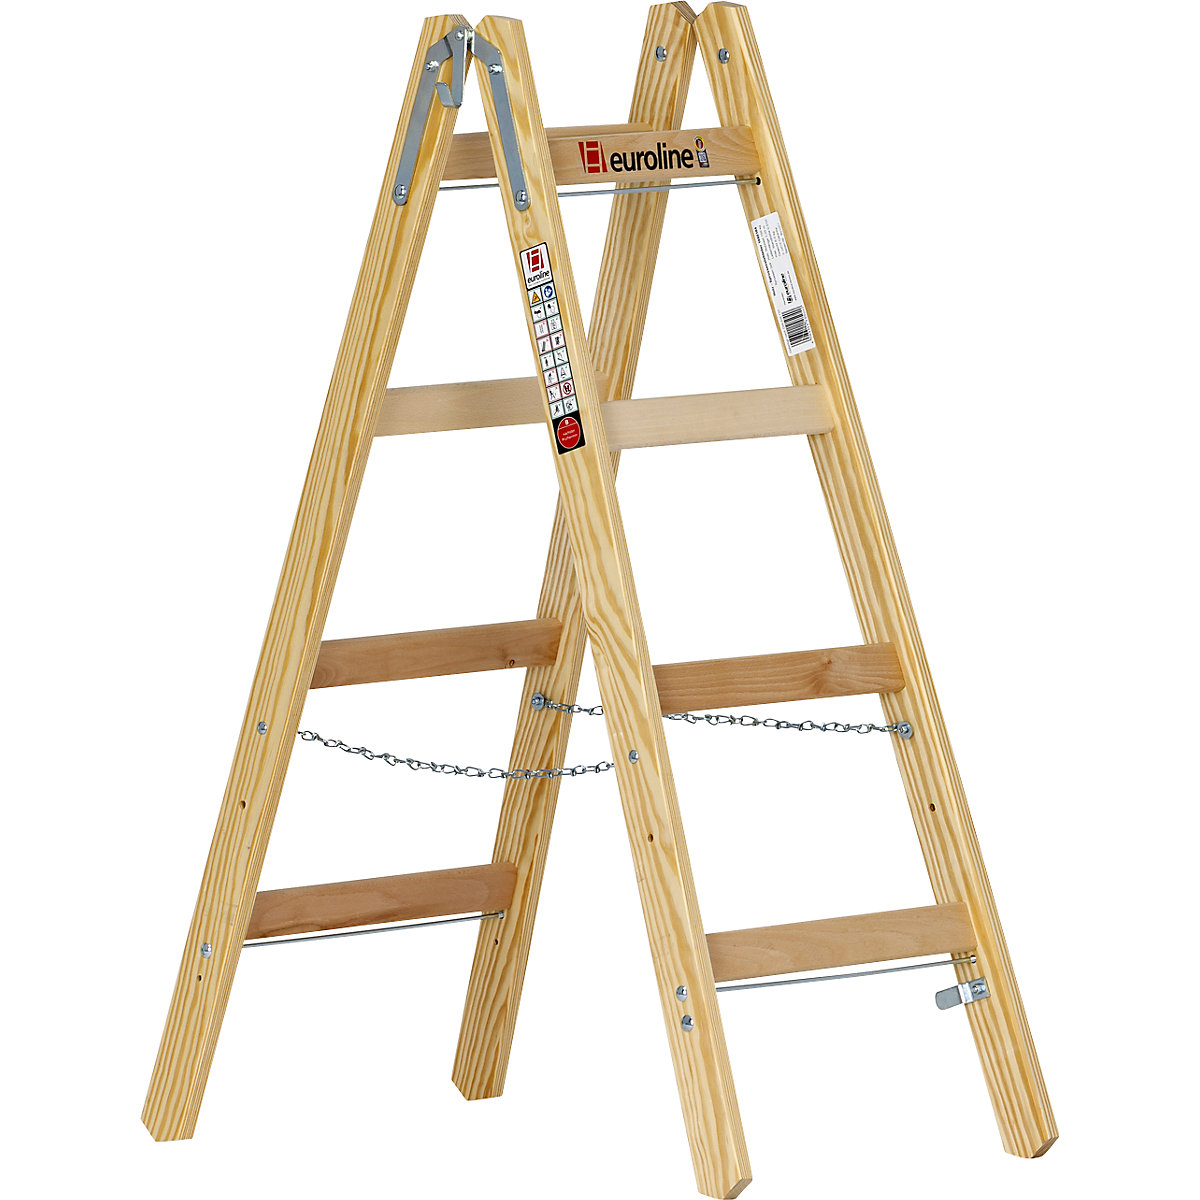 Wooden rung ladder – euroline